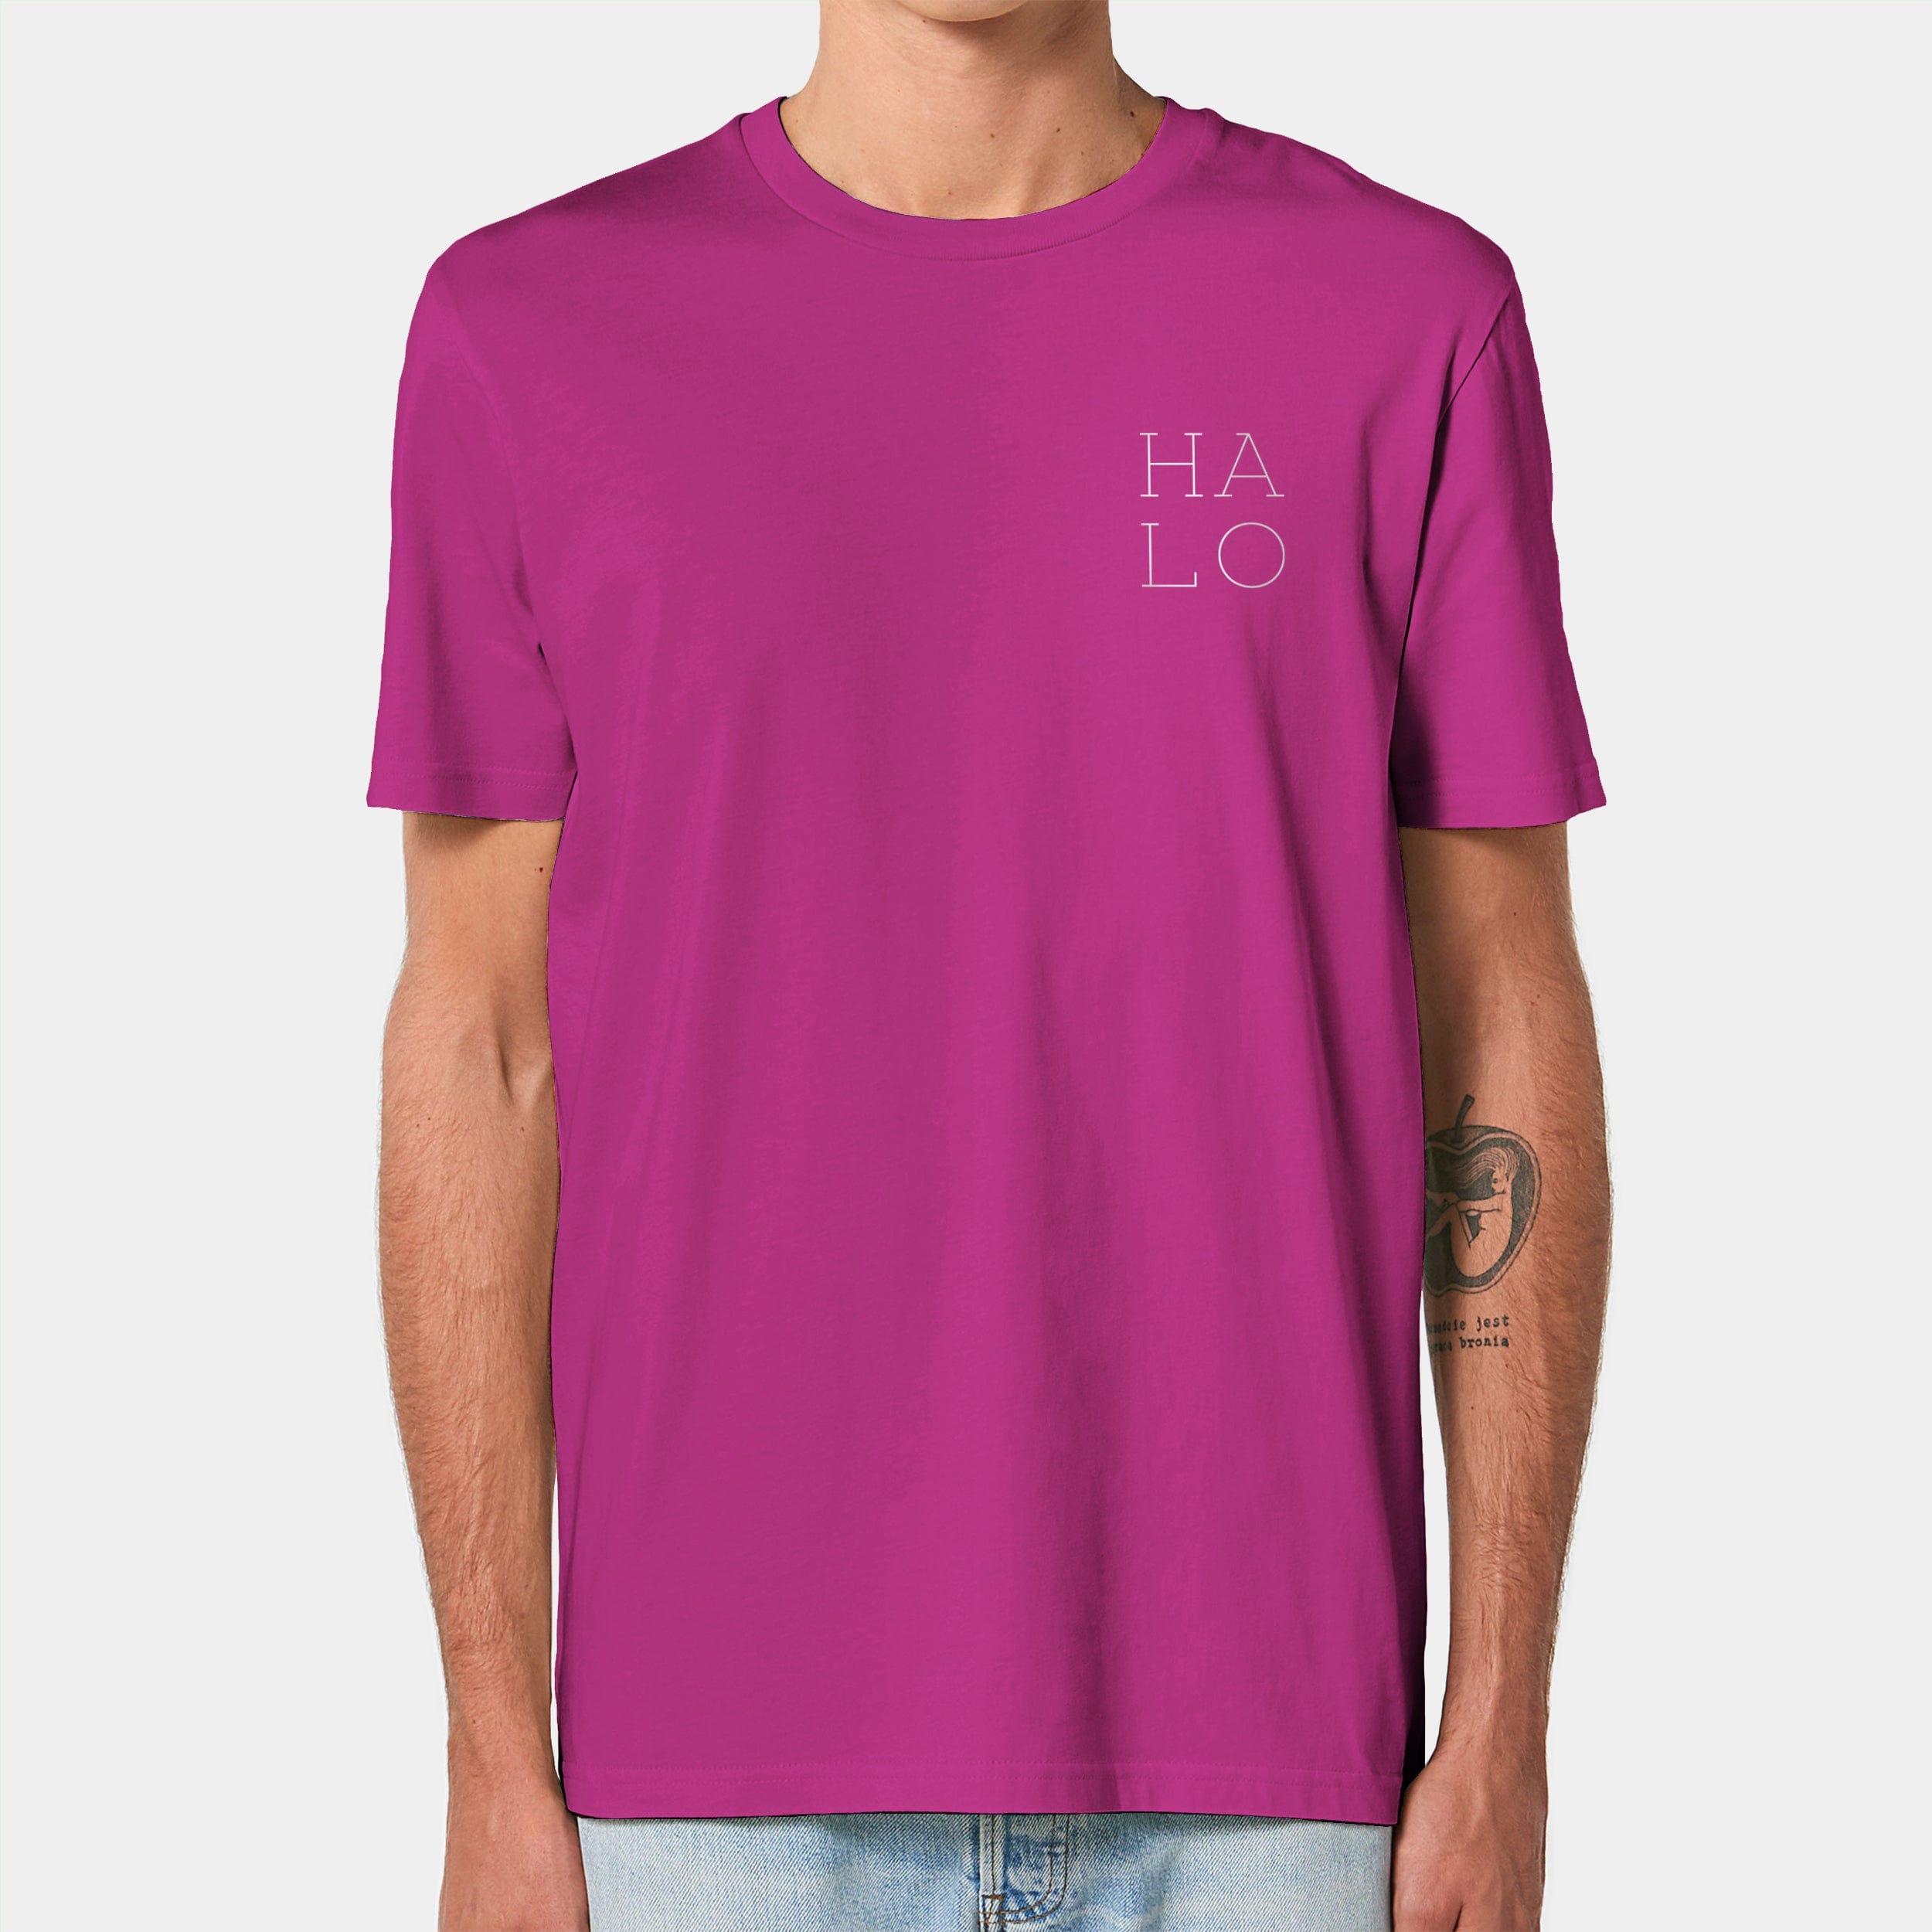 HEITER & LÄSSIG T-Shirt "HALO" XXS / orchid flower - aus nachhaltiger und fairer Produktion